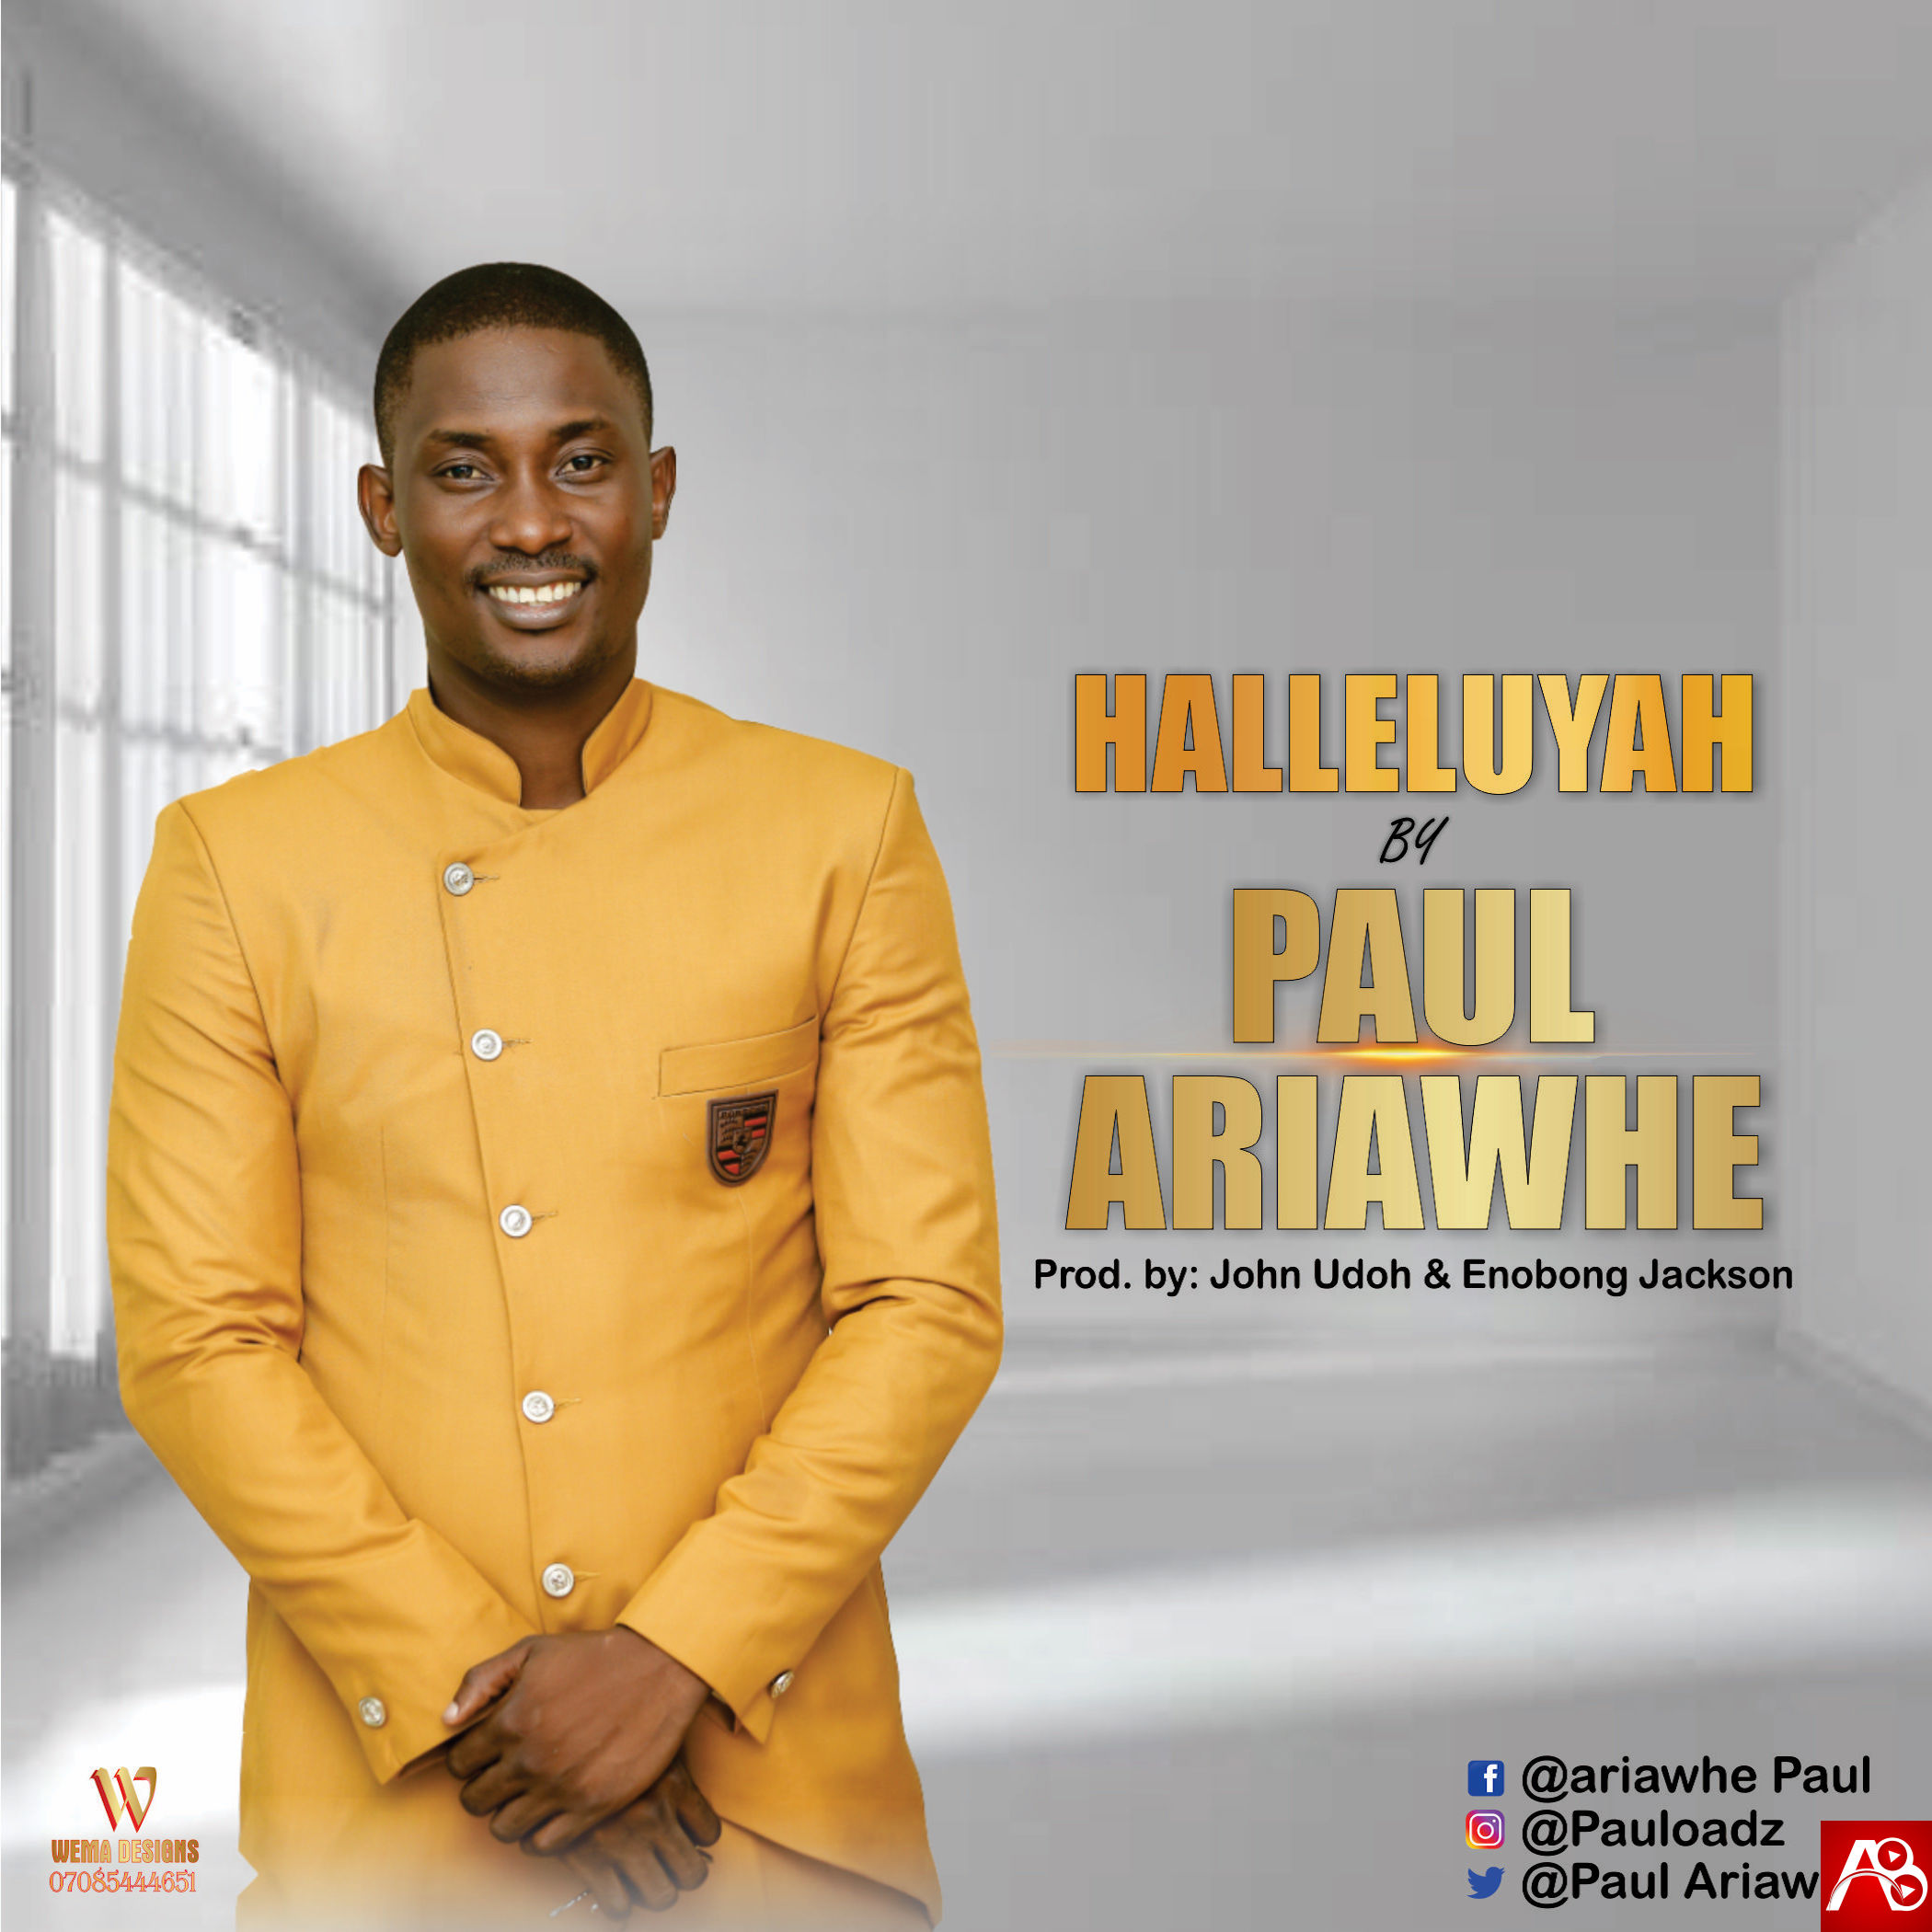  Paul Ariawh,Halleluyah , Paul Ariawhe Halleluyah ,Gospel Songs,  Nigerian Gospel Music,